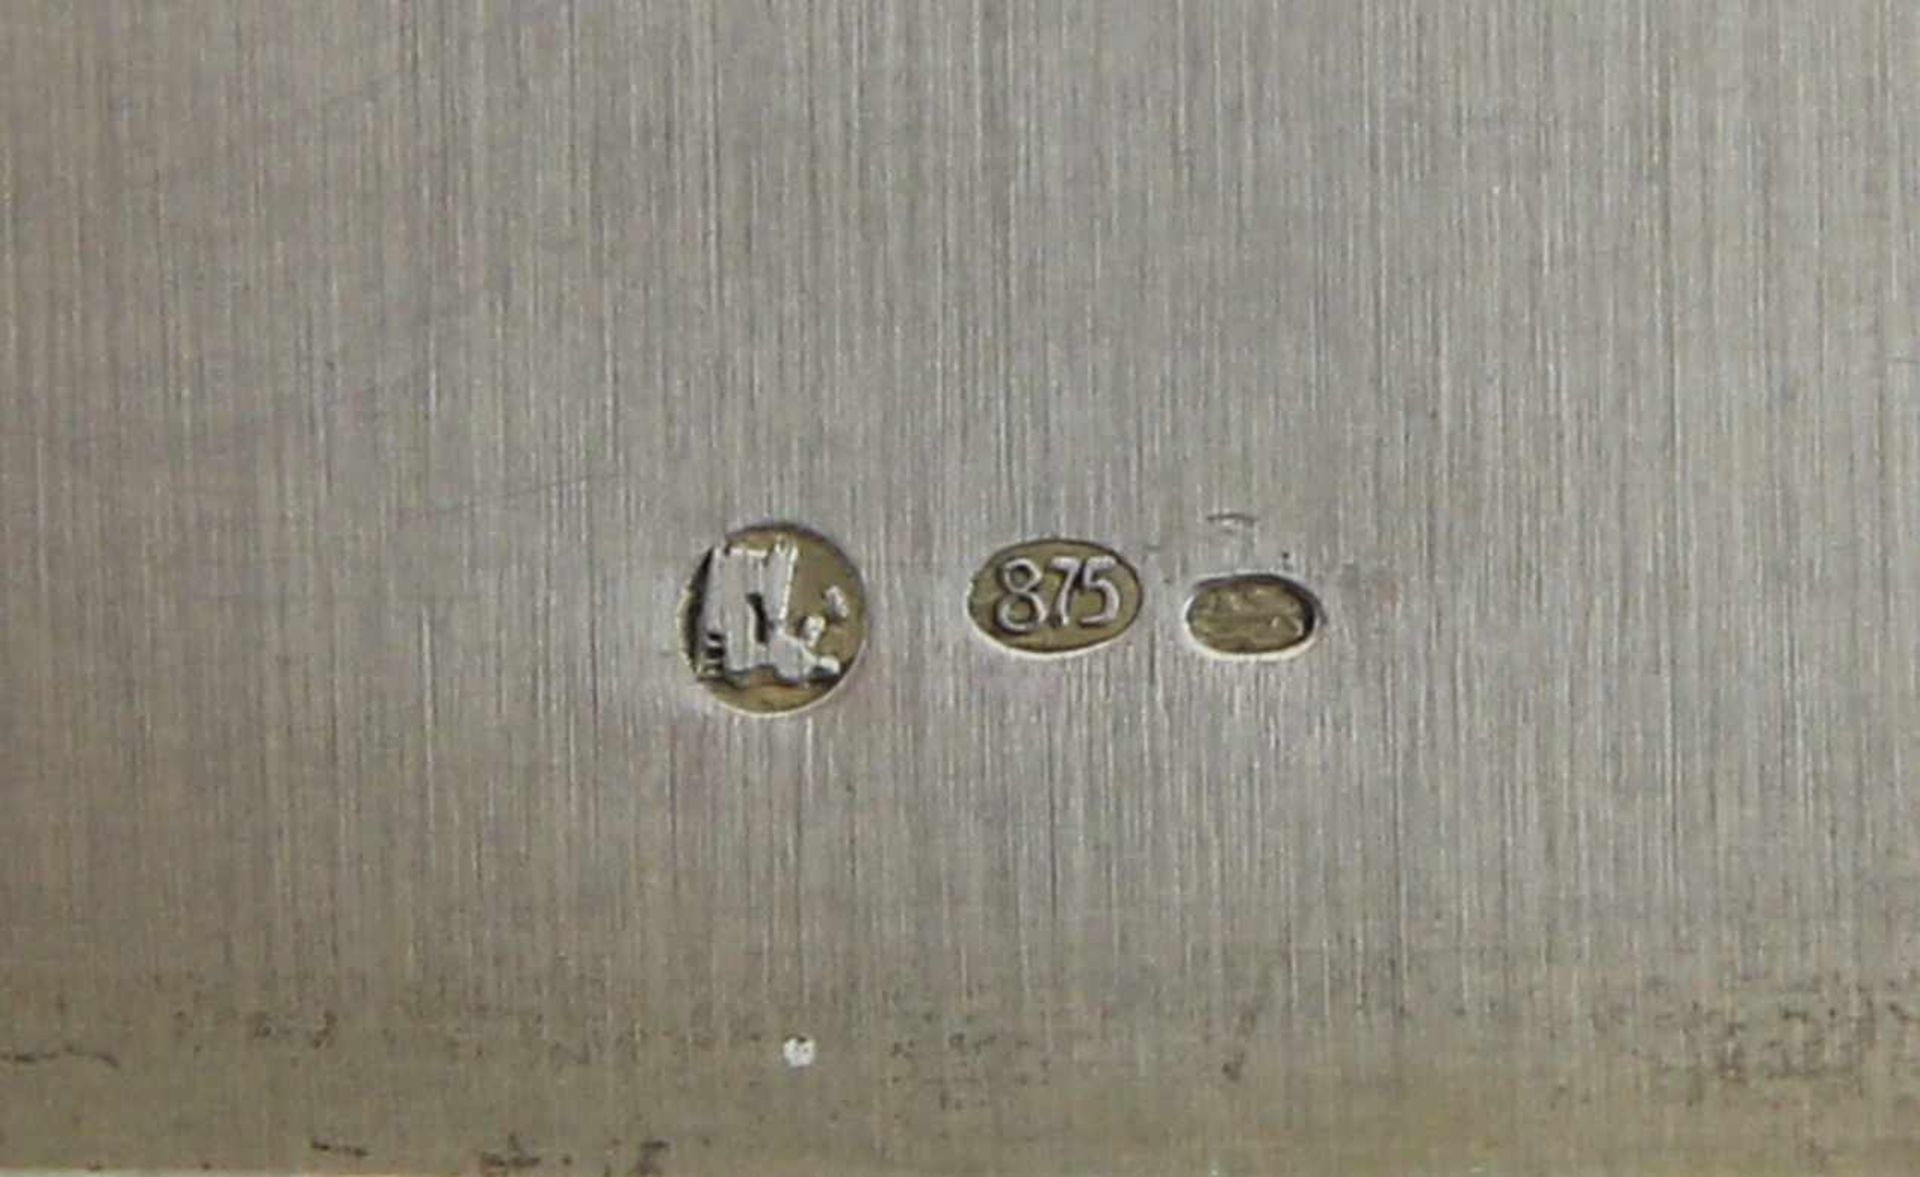 Zigarrenkasten "Narva" Silber 875 getrieben und graviert, rechteckiger Kasten mit flachem - Bild 4 aus 4